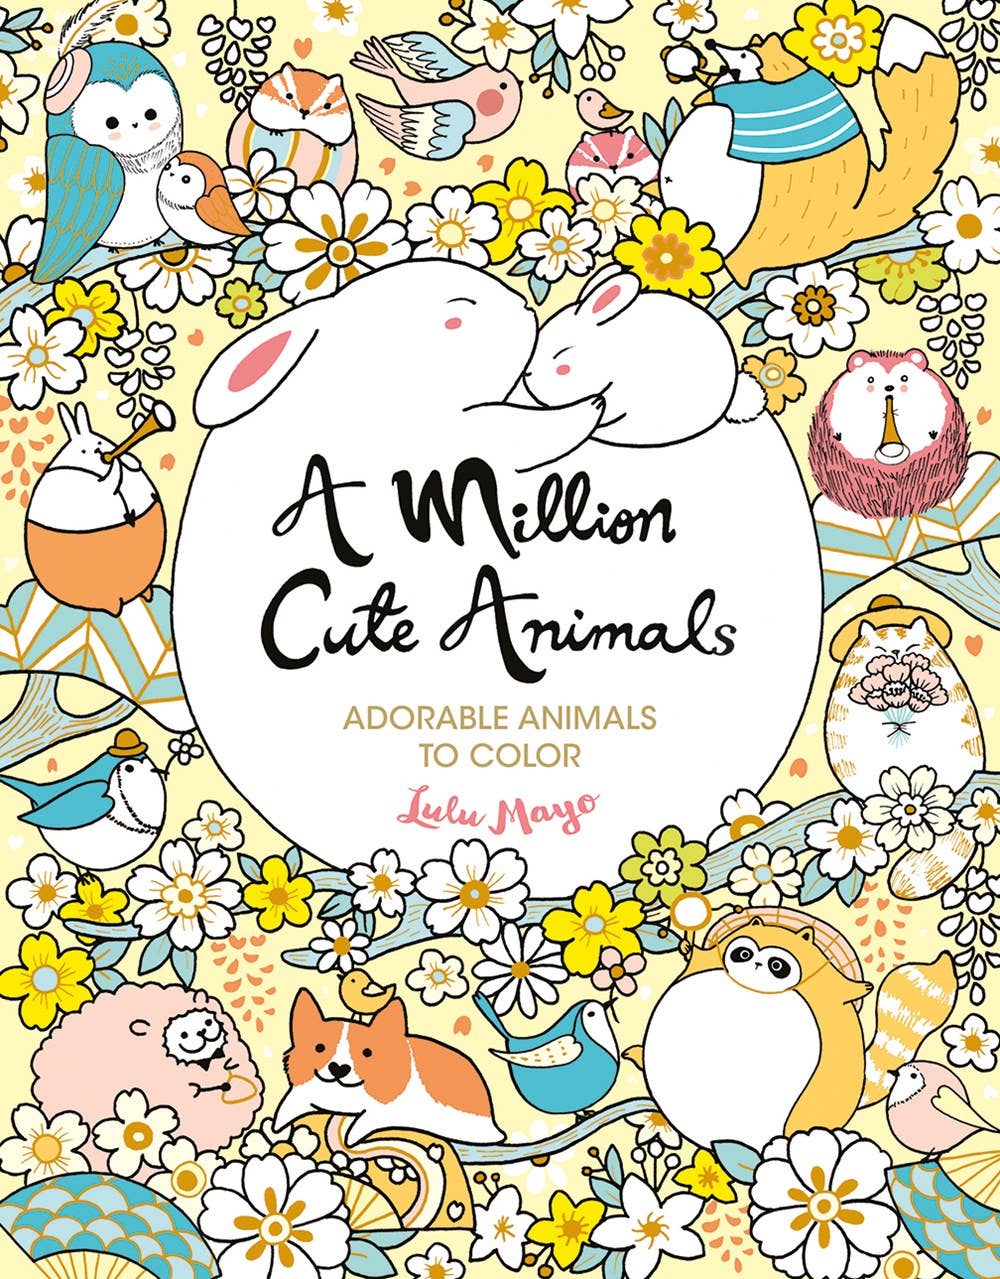 Union Square & Co. - A Million Cute Animals Coloring Book